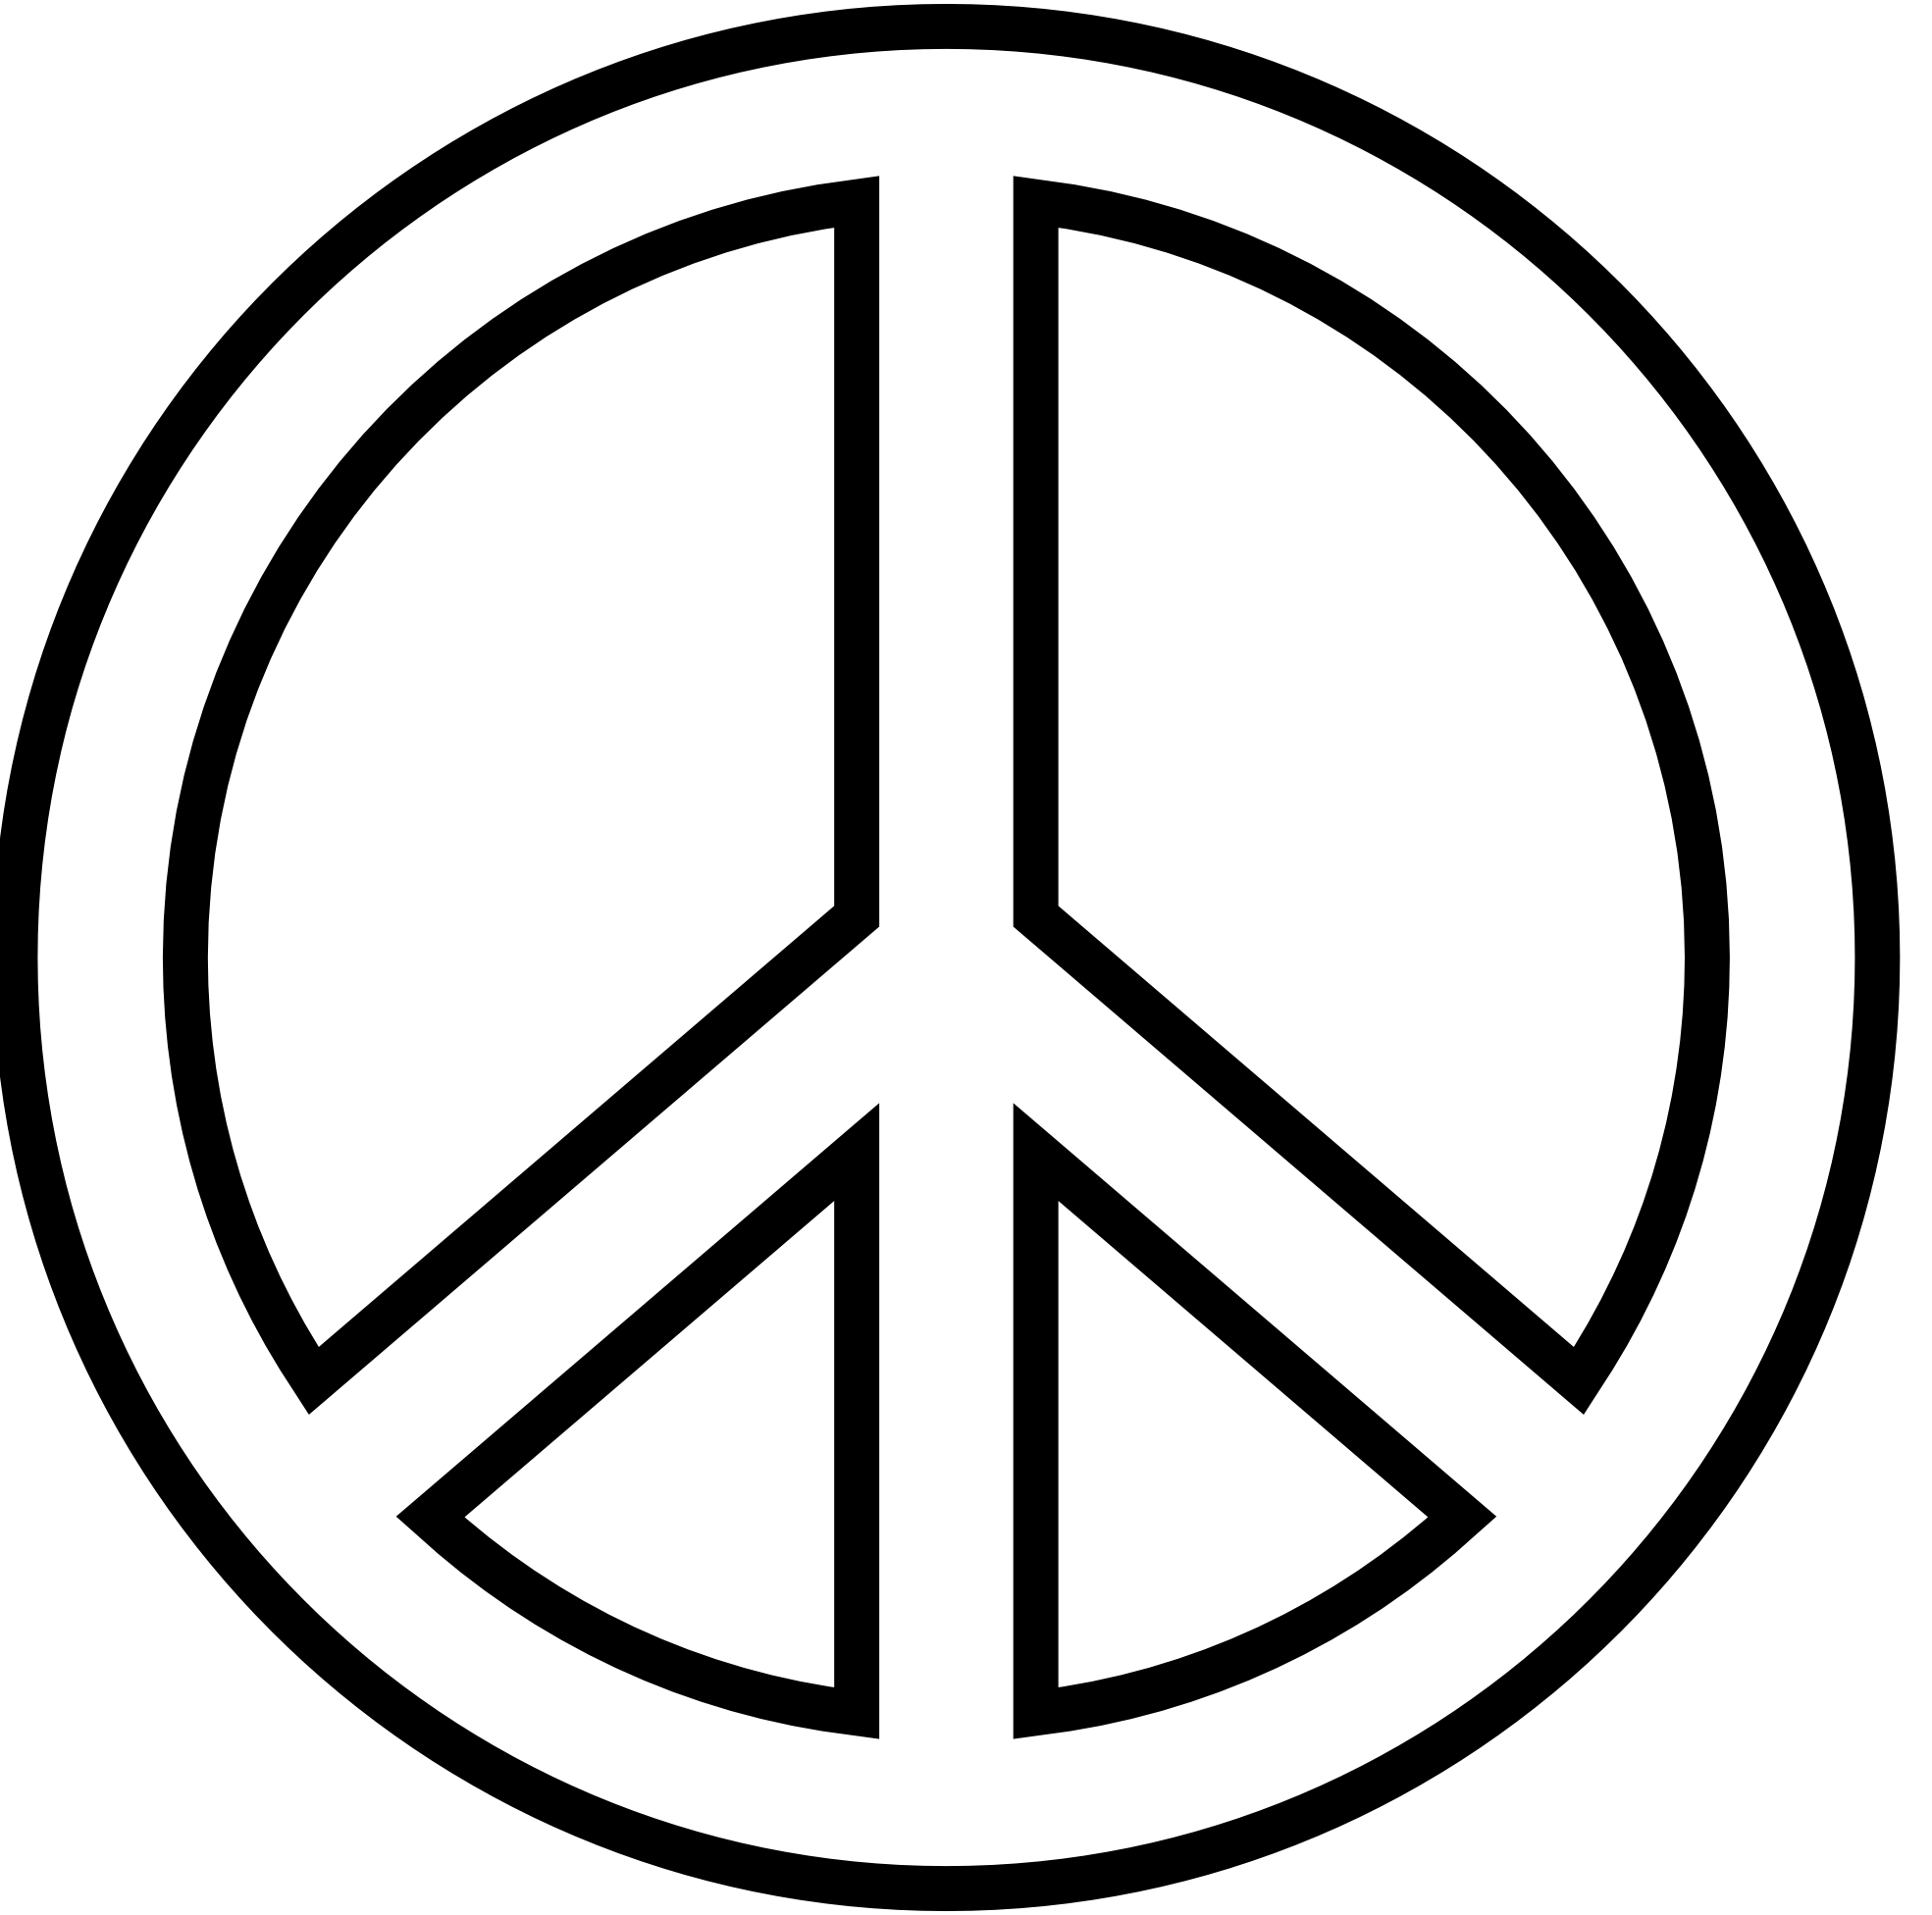 和平象征